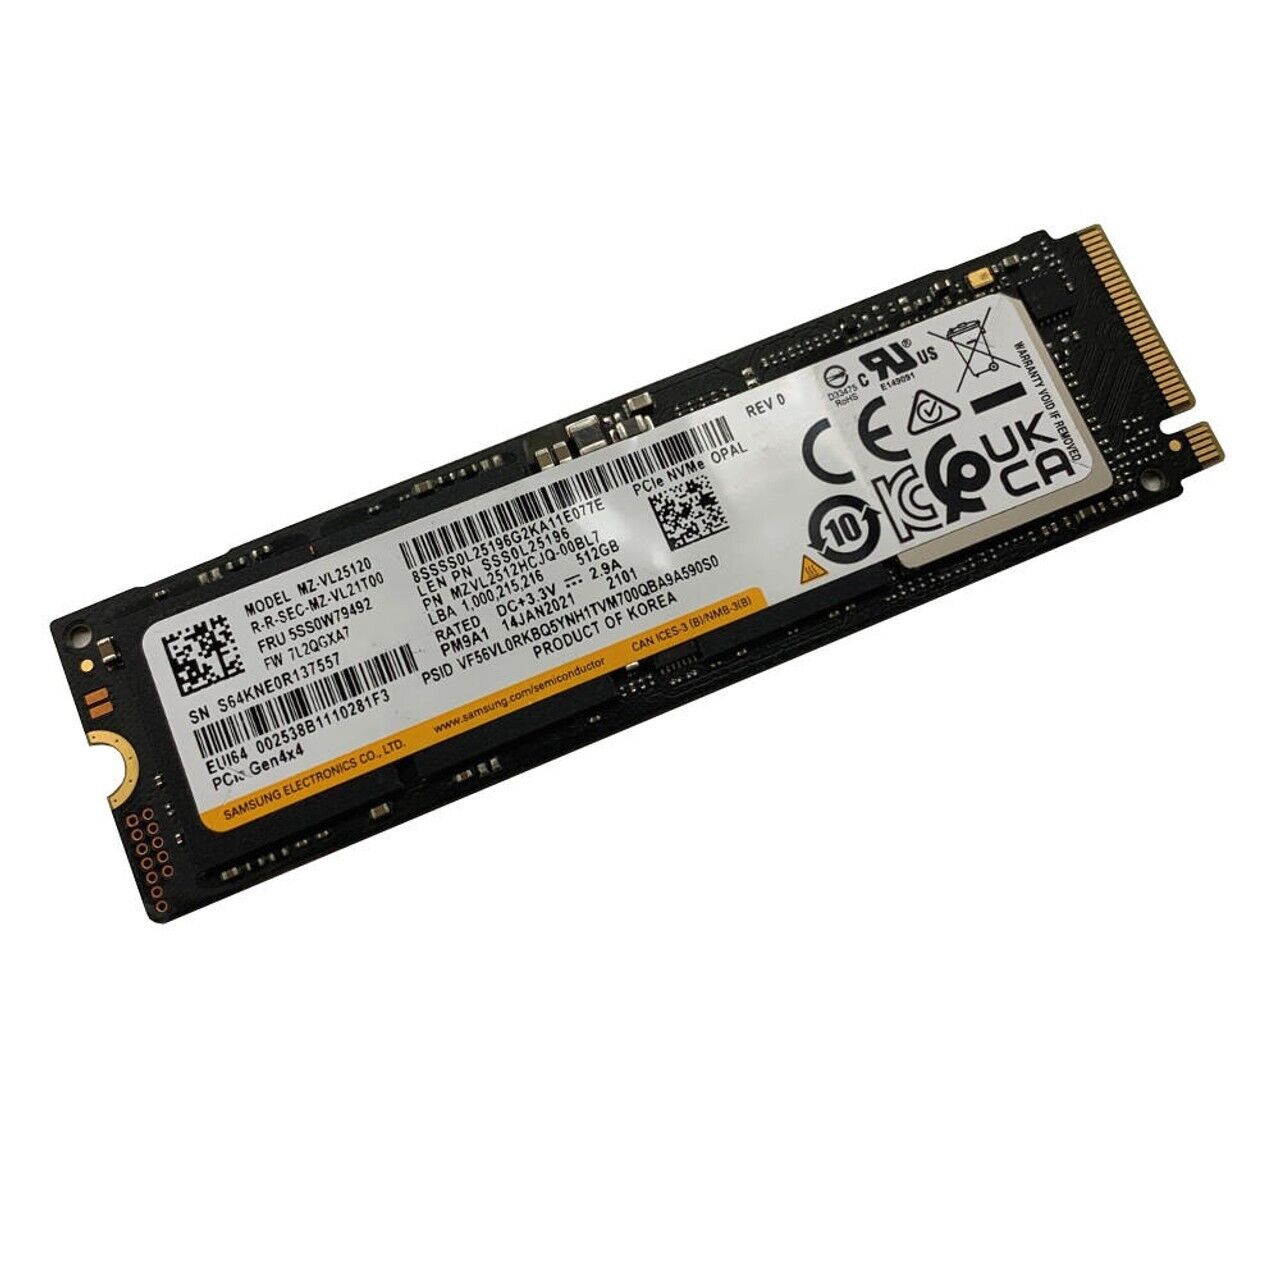 New Samsung PM9A1a 512GB PCIe 4.0 SSD (MZVL2512HCJQ-00BD2) OEM